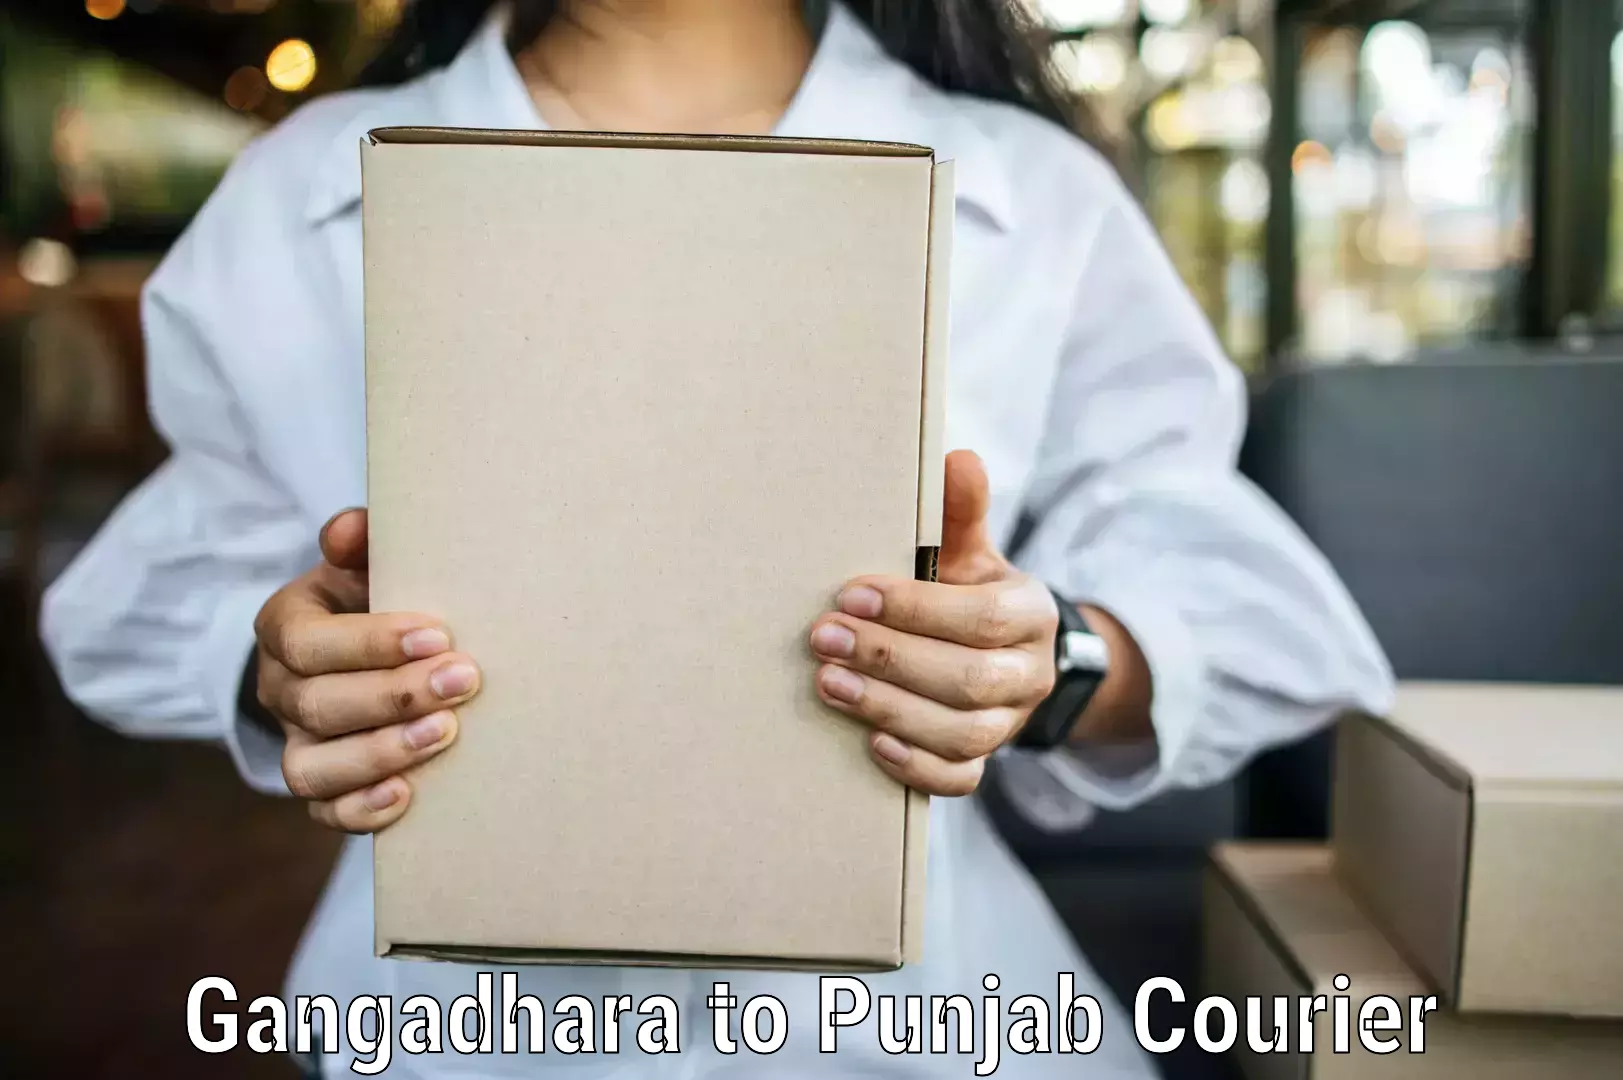 Bulk shipping discounts Gangadhara to Patiala